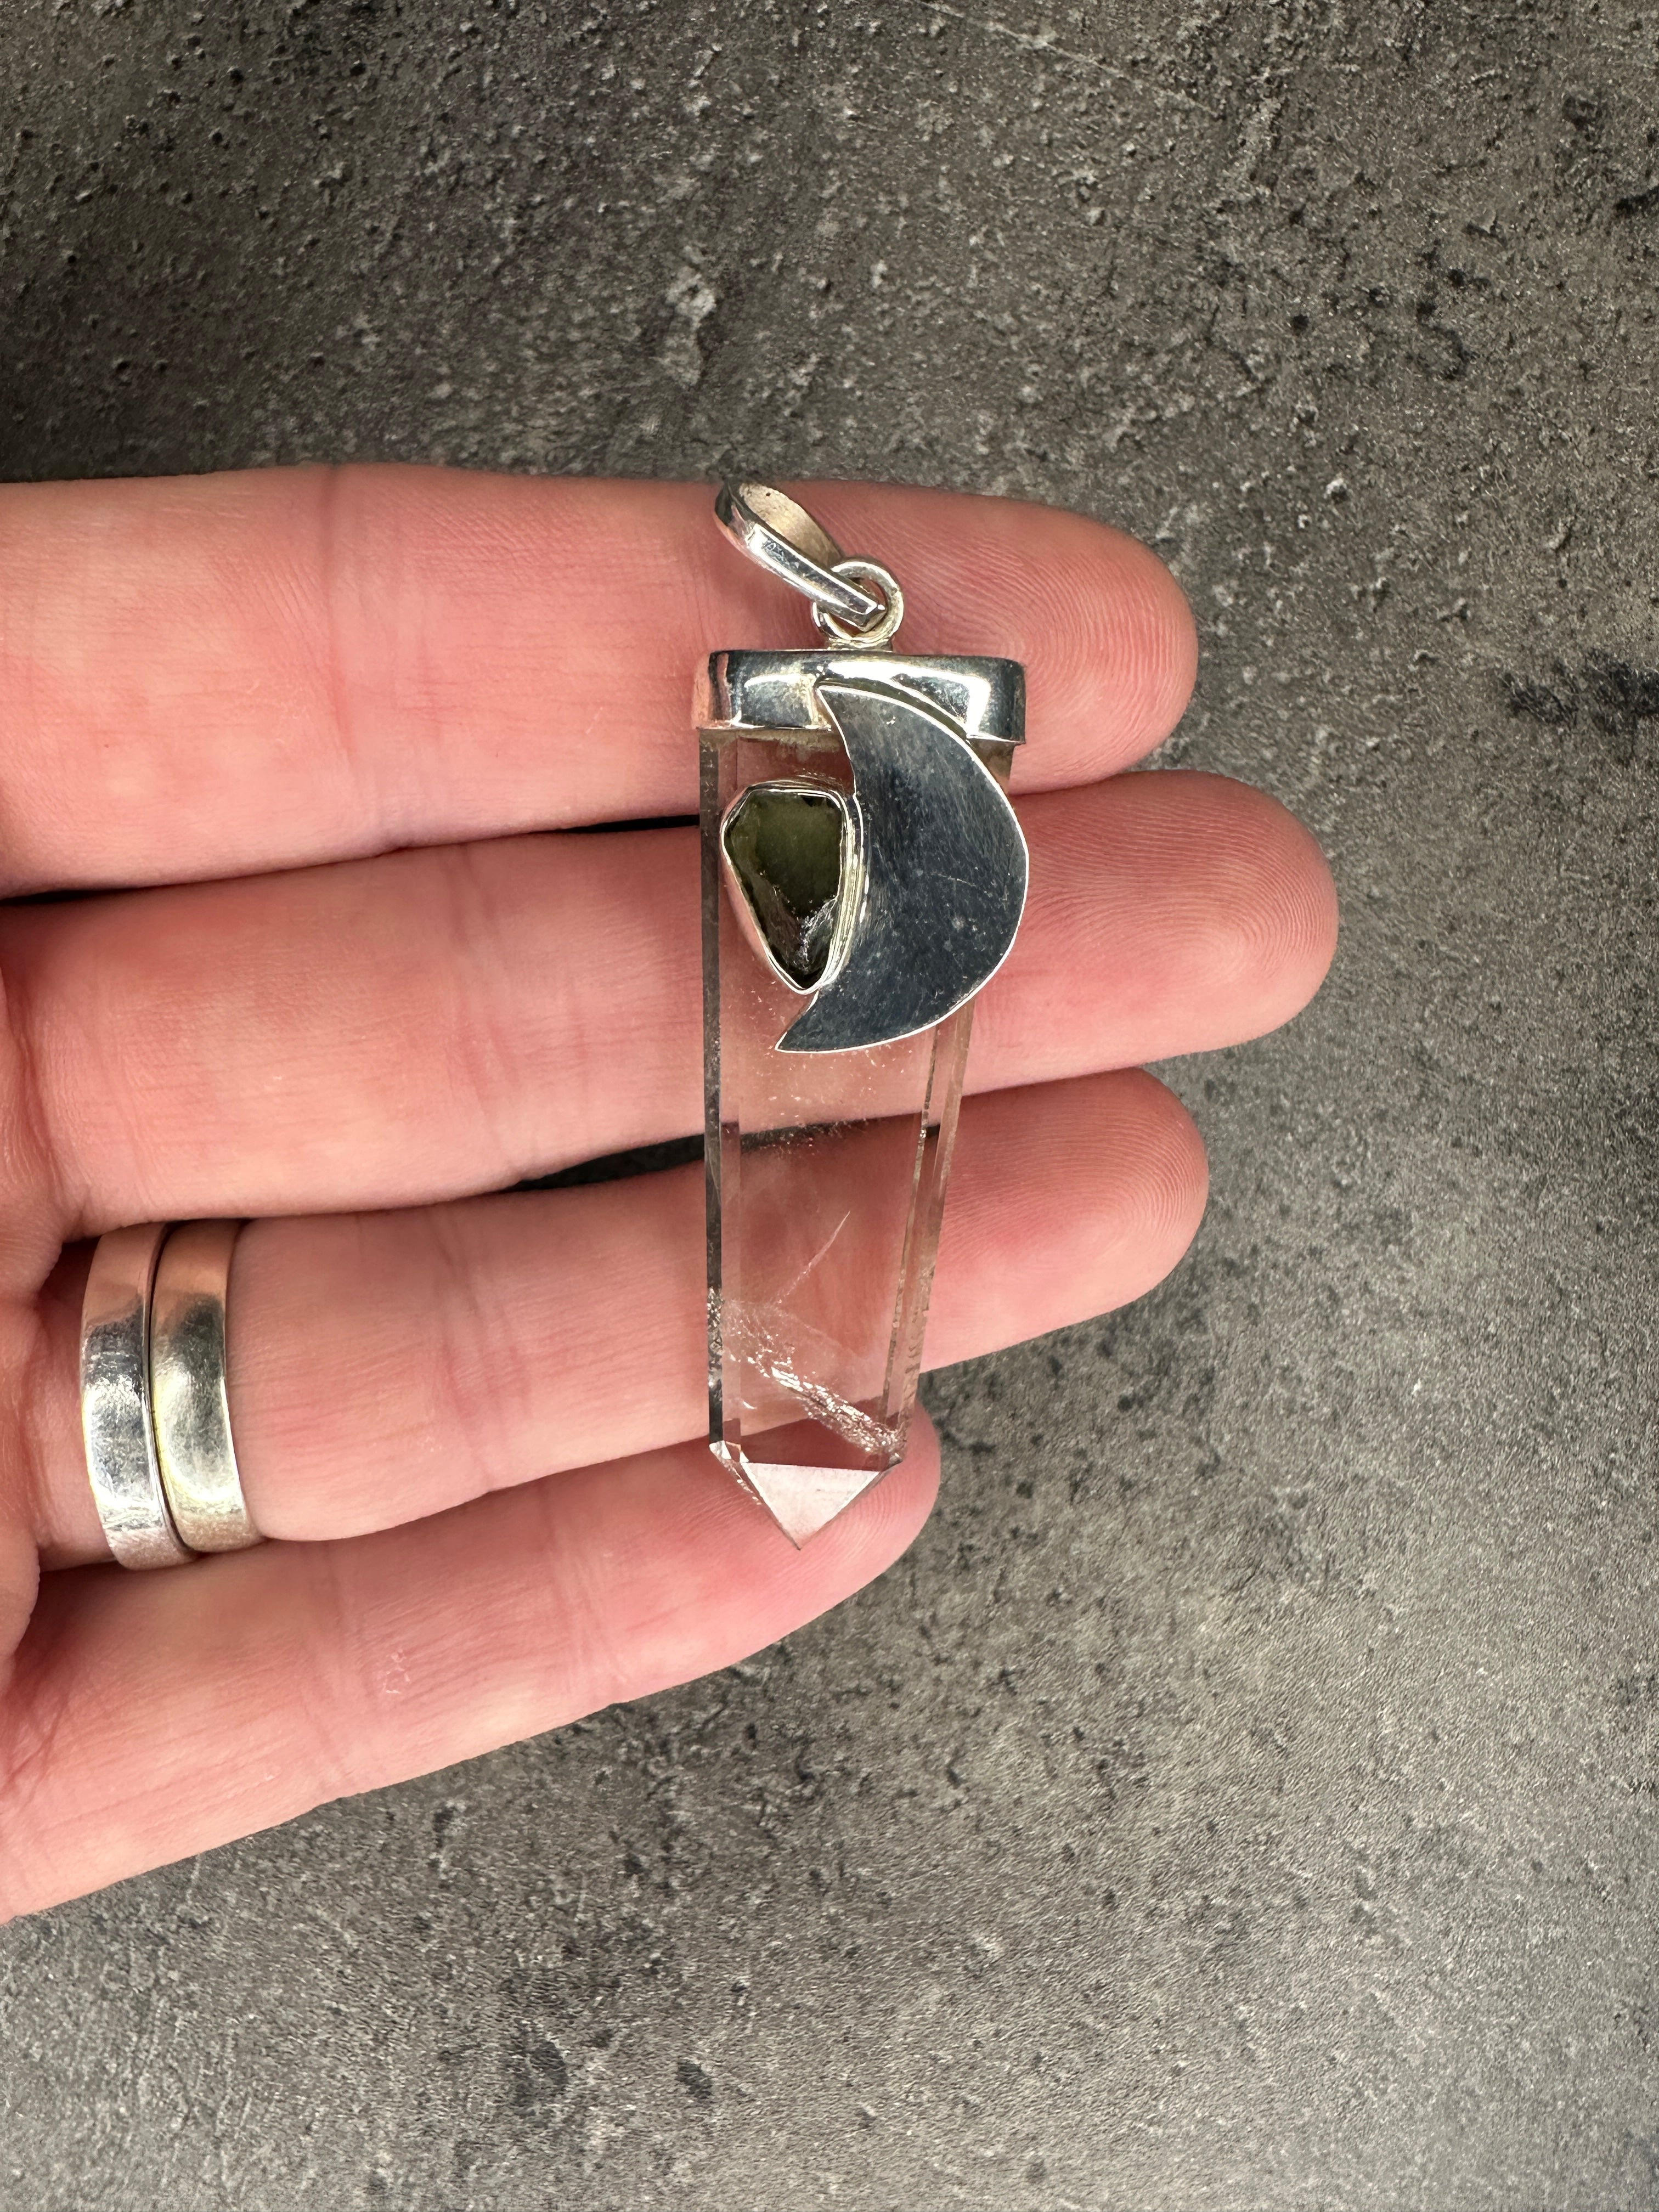 Moldavite and quartz - Pendant